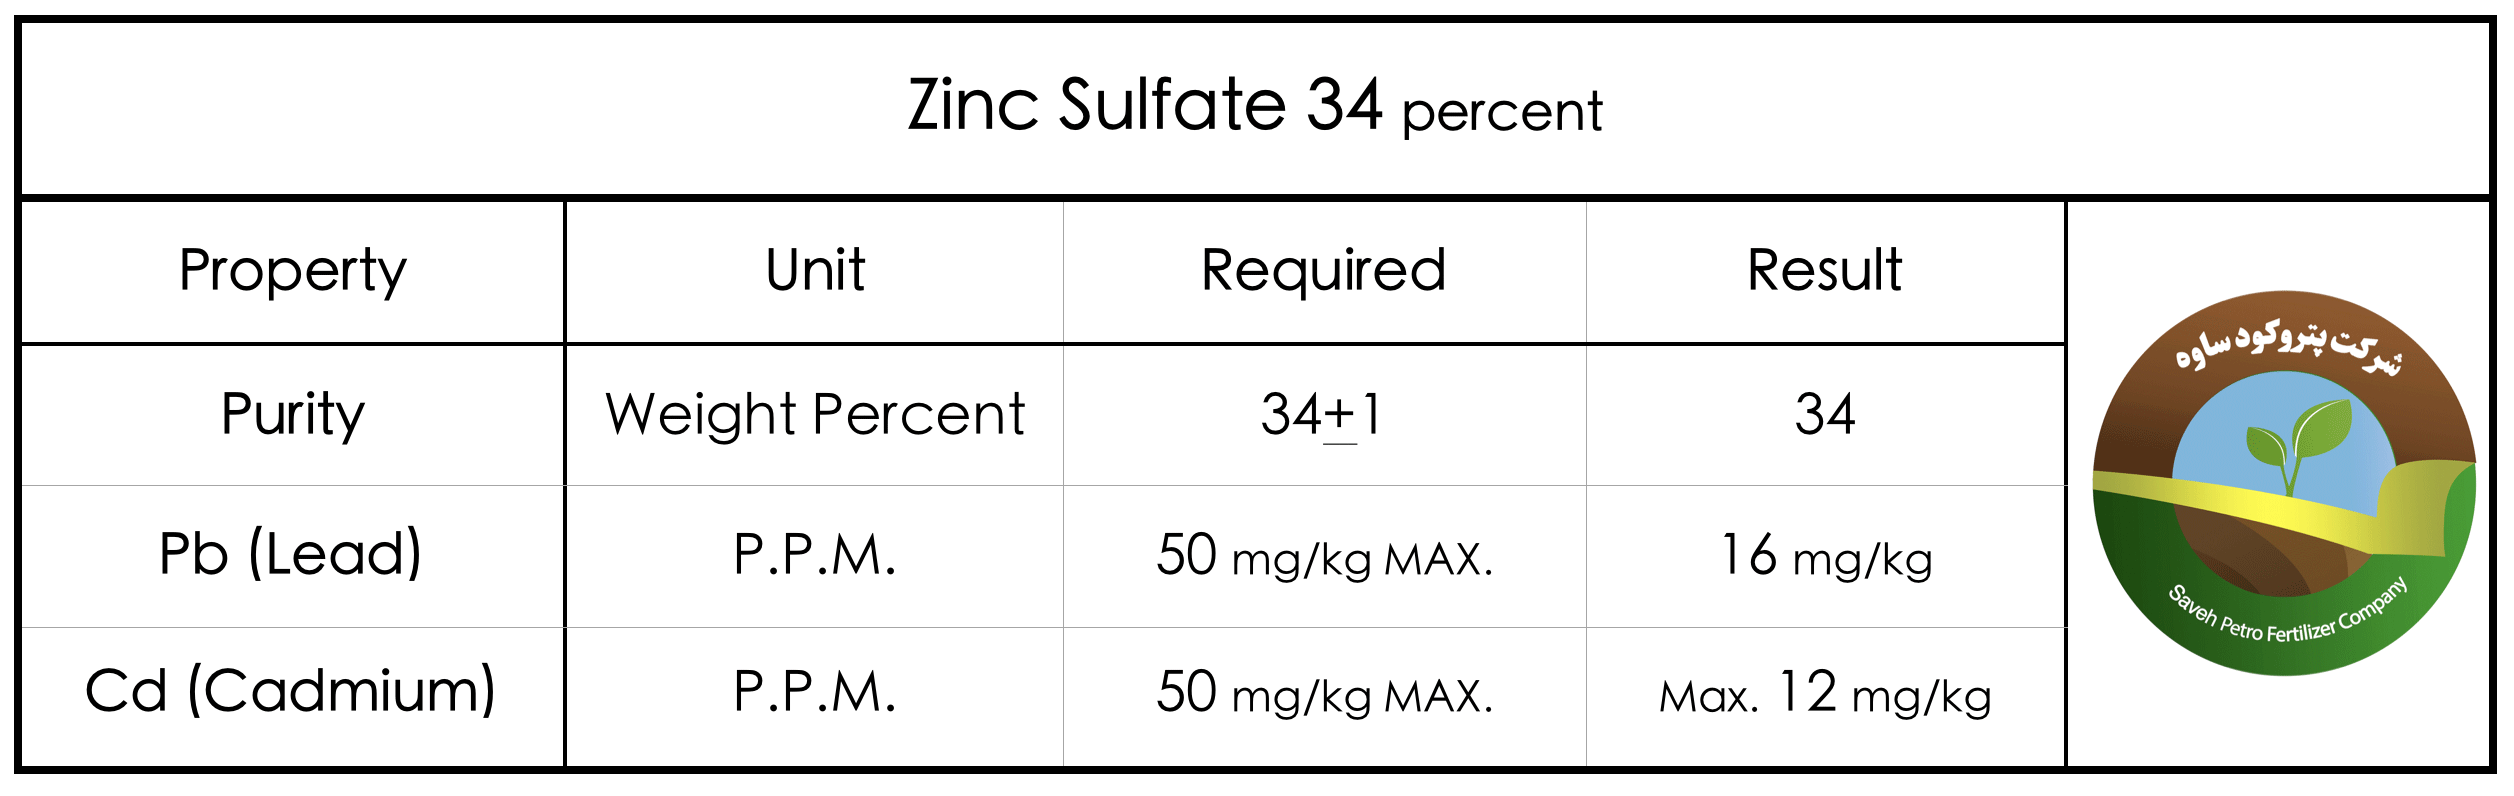 Zinc Sulfate 34